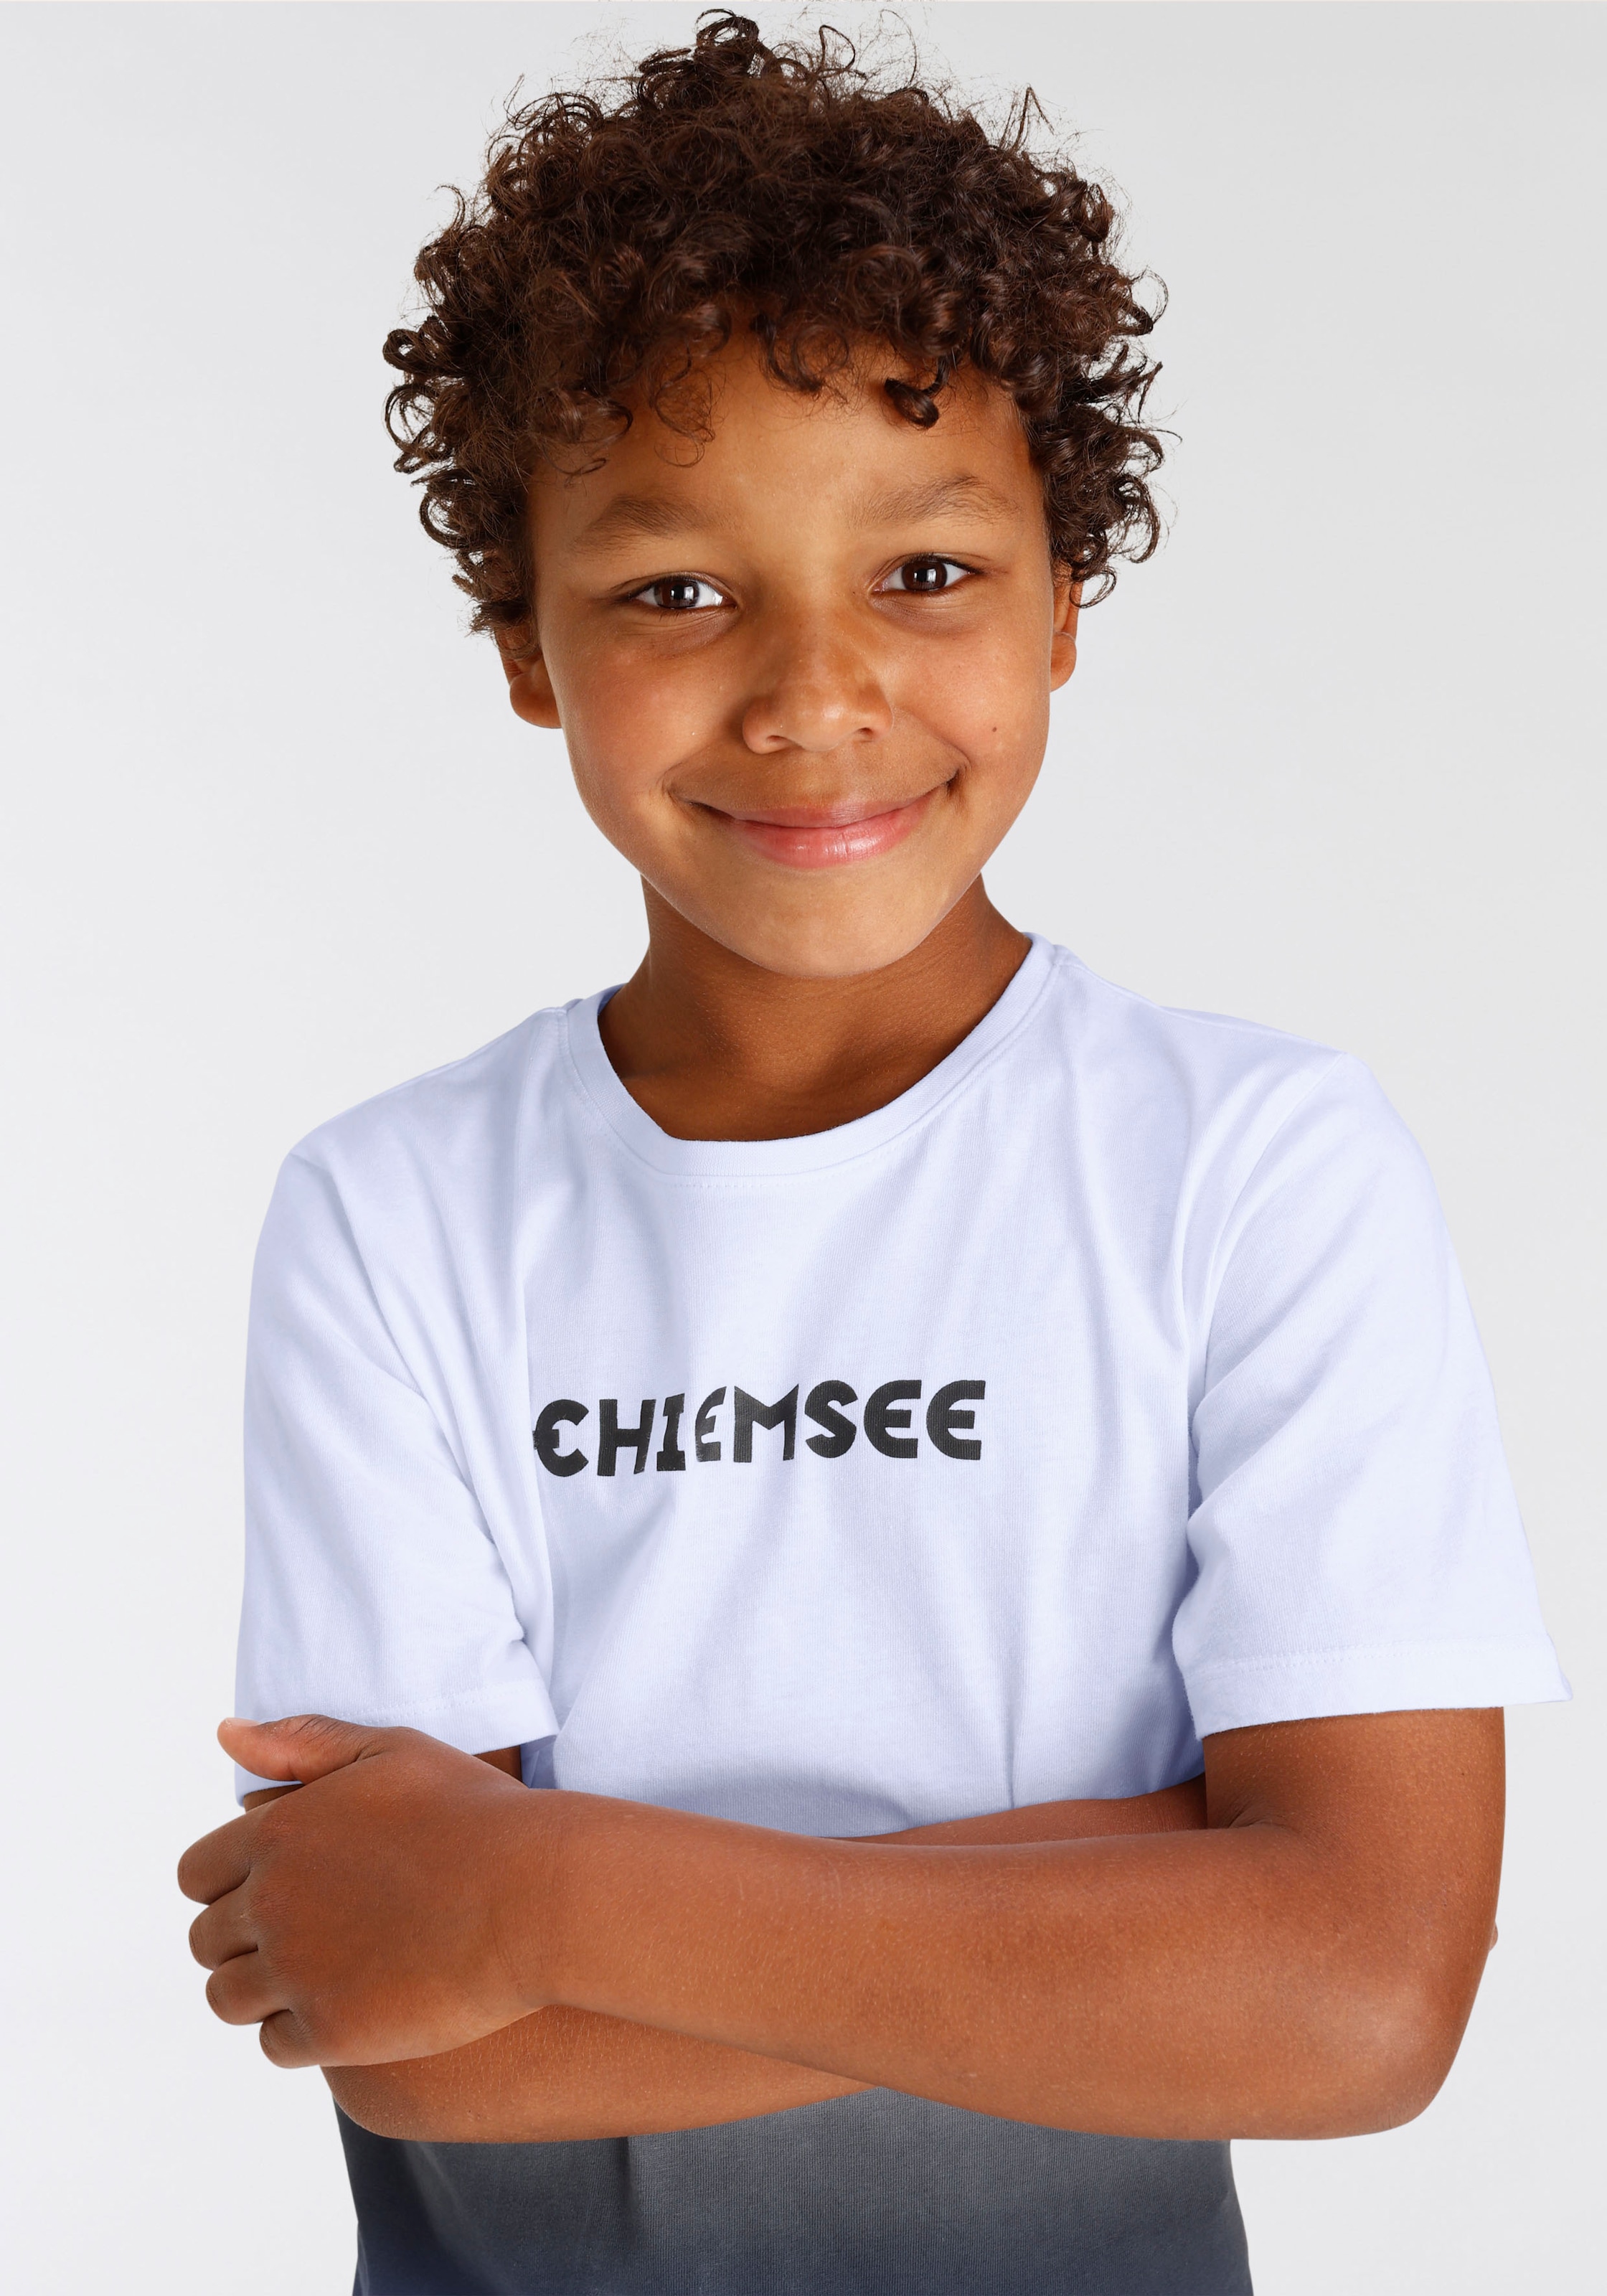 Chiemsee T-Shirt »Modischer Farbverlauf« bei OTTO